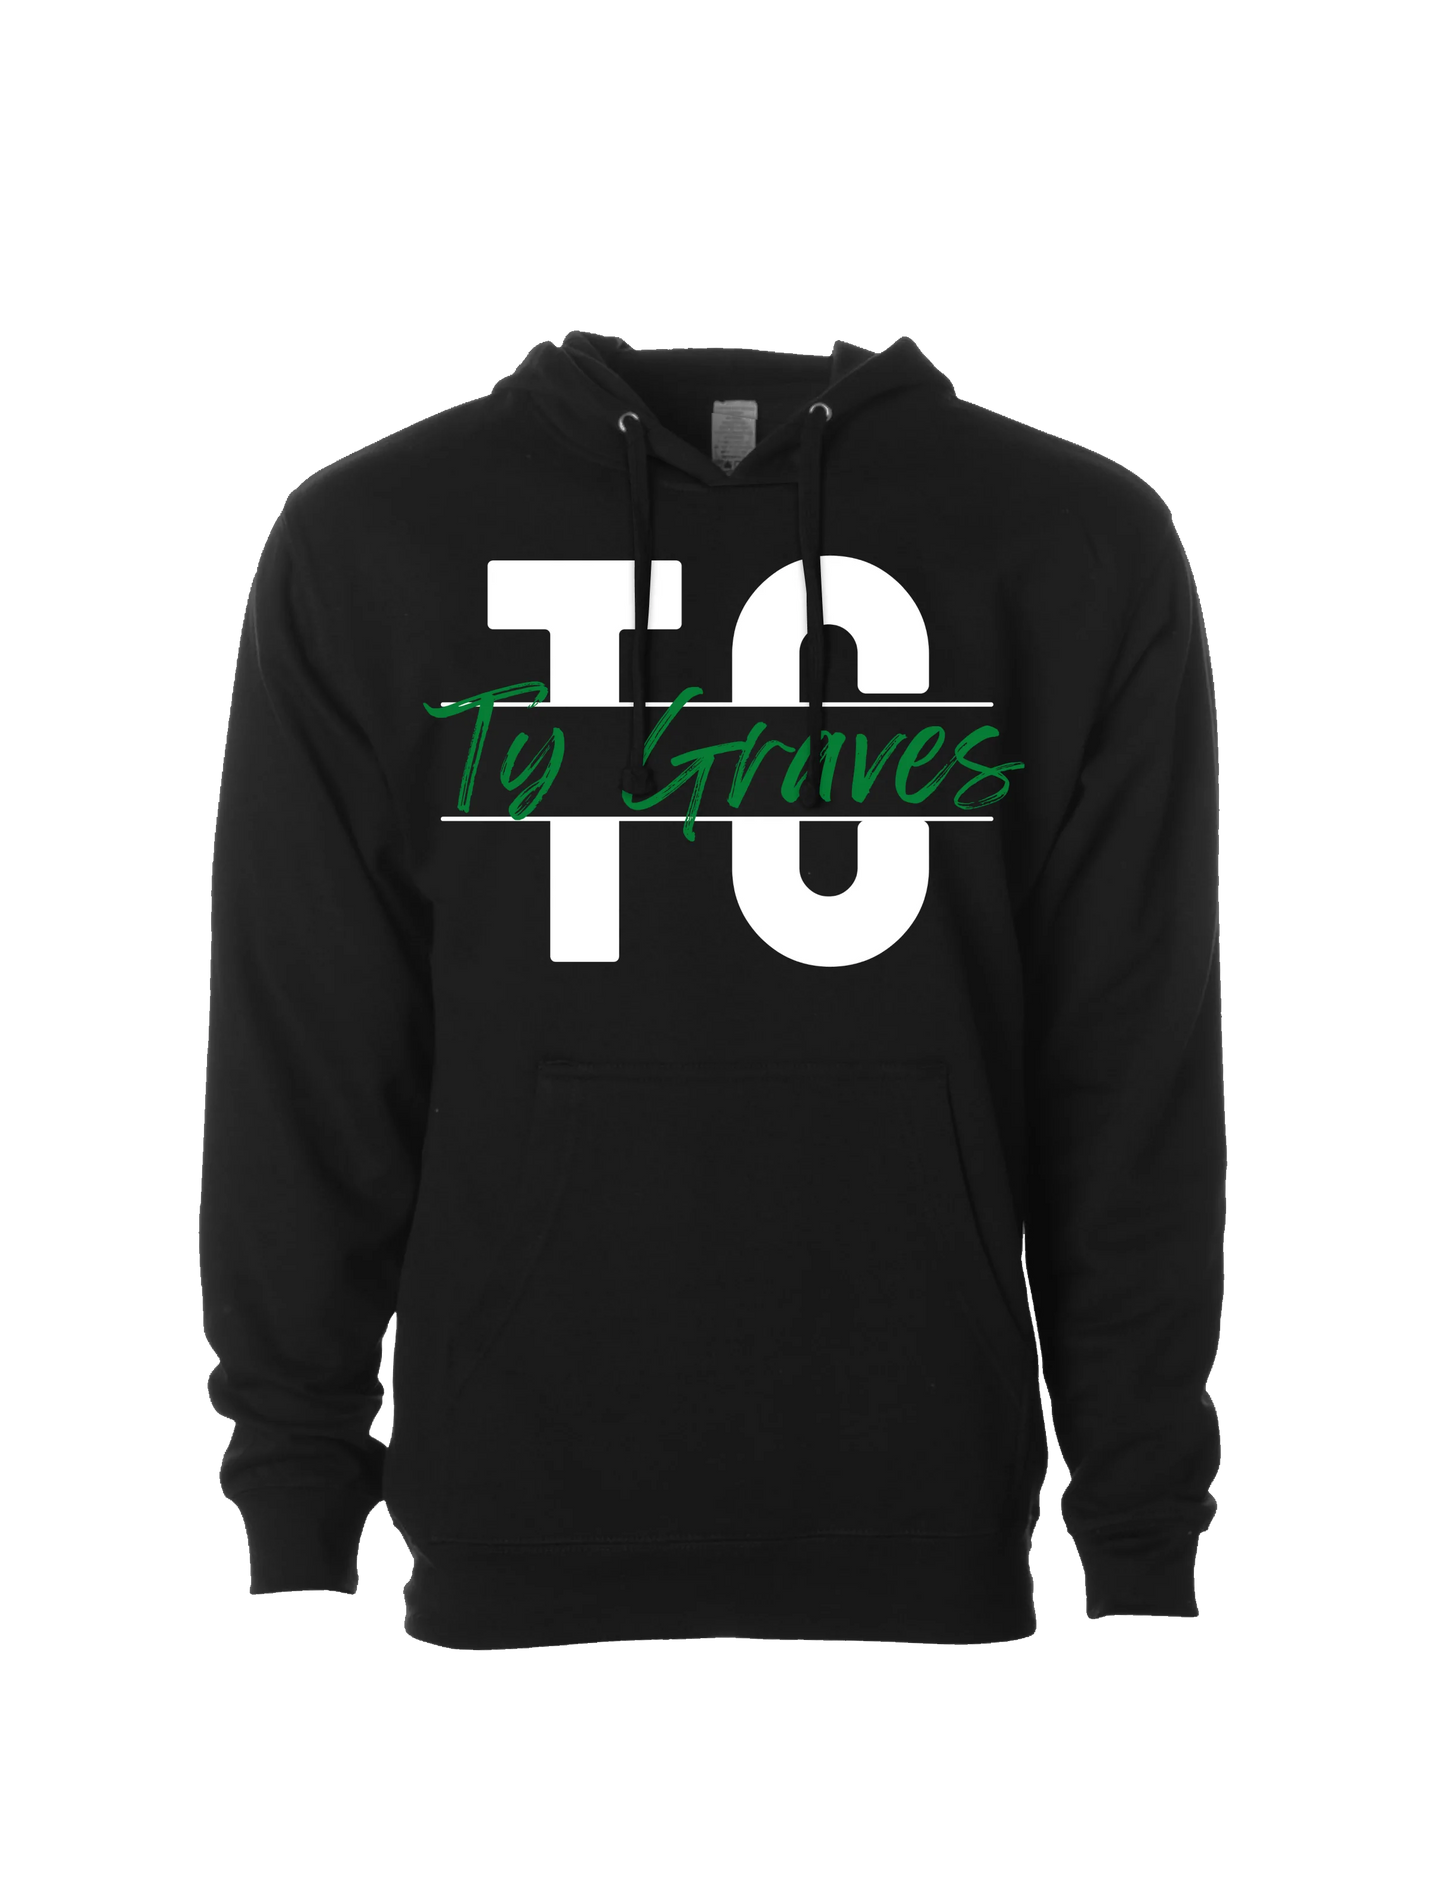 Ty Graves - Logo 2 - Black Hoodie